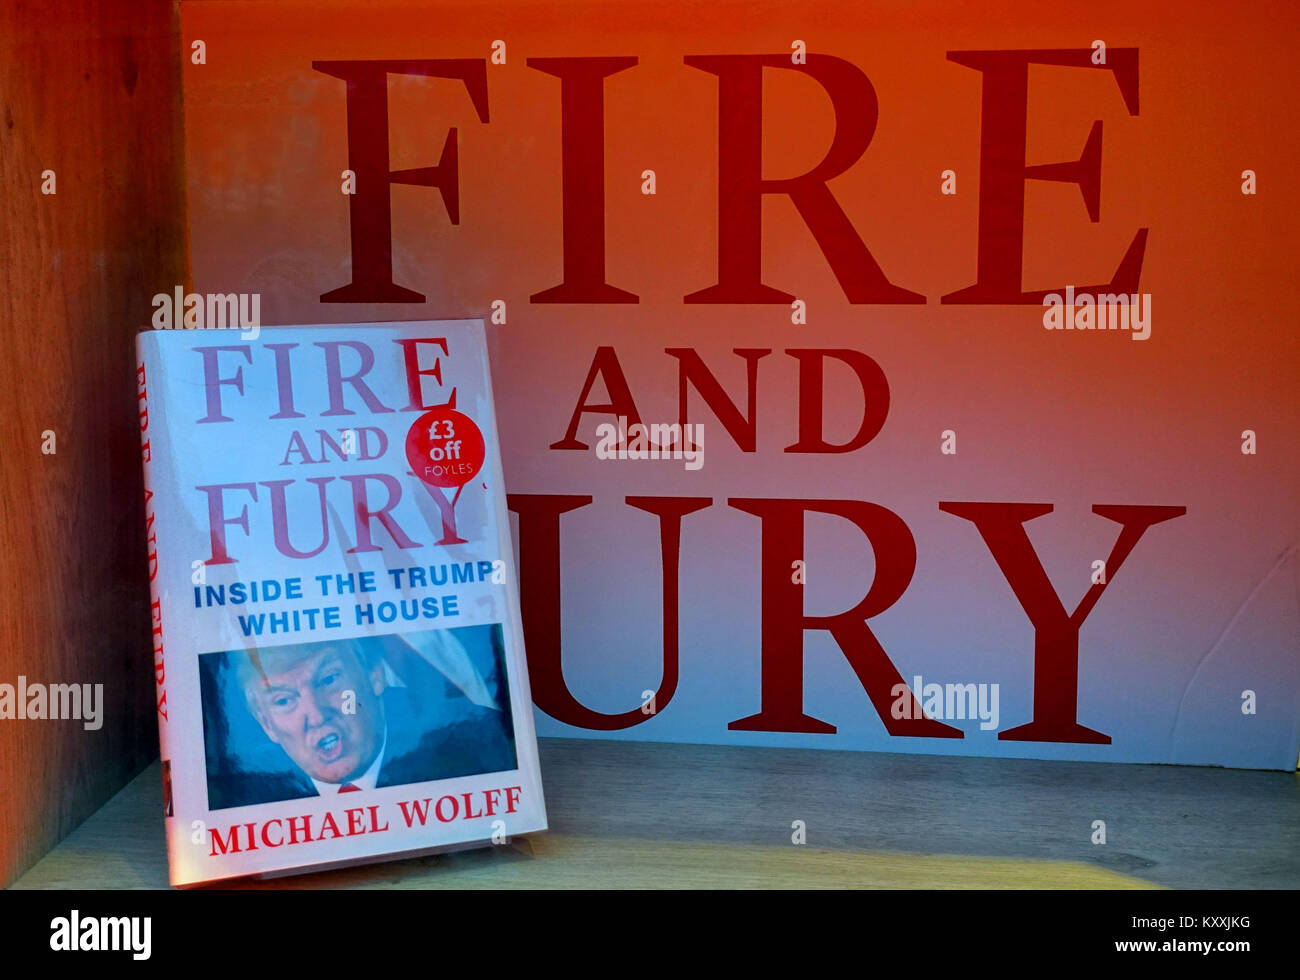 Buchhandlung im Zentrum von London für "Fire & Fury", das meistverkaufte Buch über die Donald Trump, das Weiße Haus von Michael Wolff Stockfoto